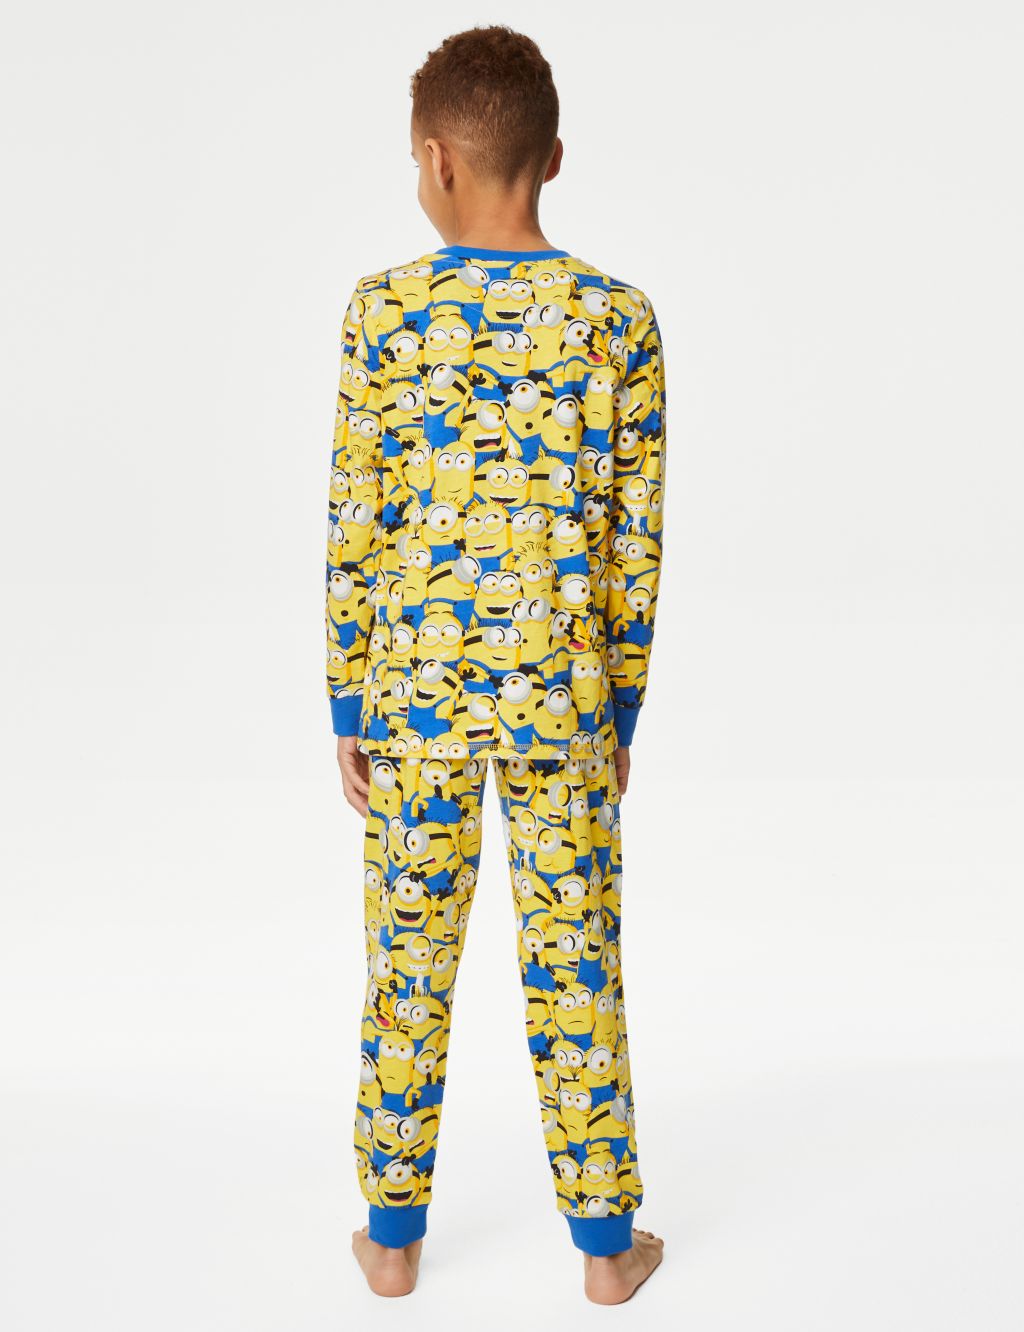 Minions™ Pyjamas (3-16 Yrs) image 3